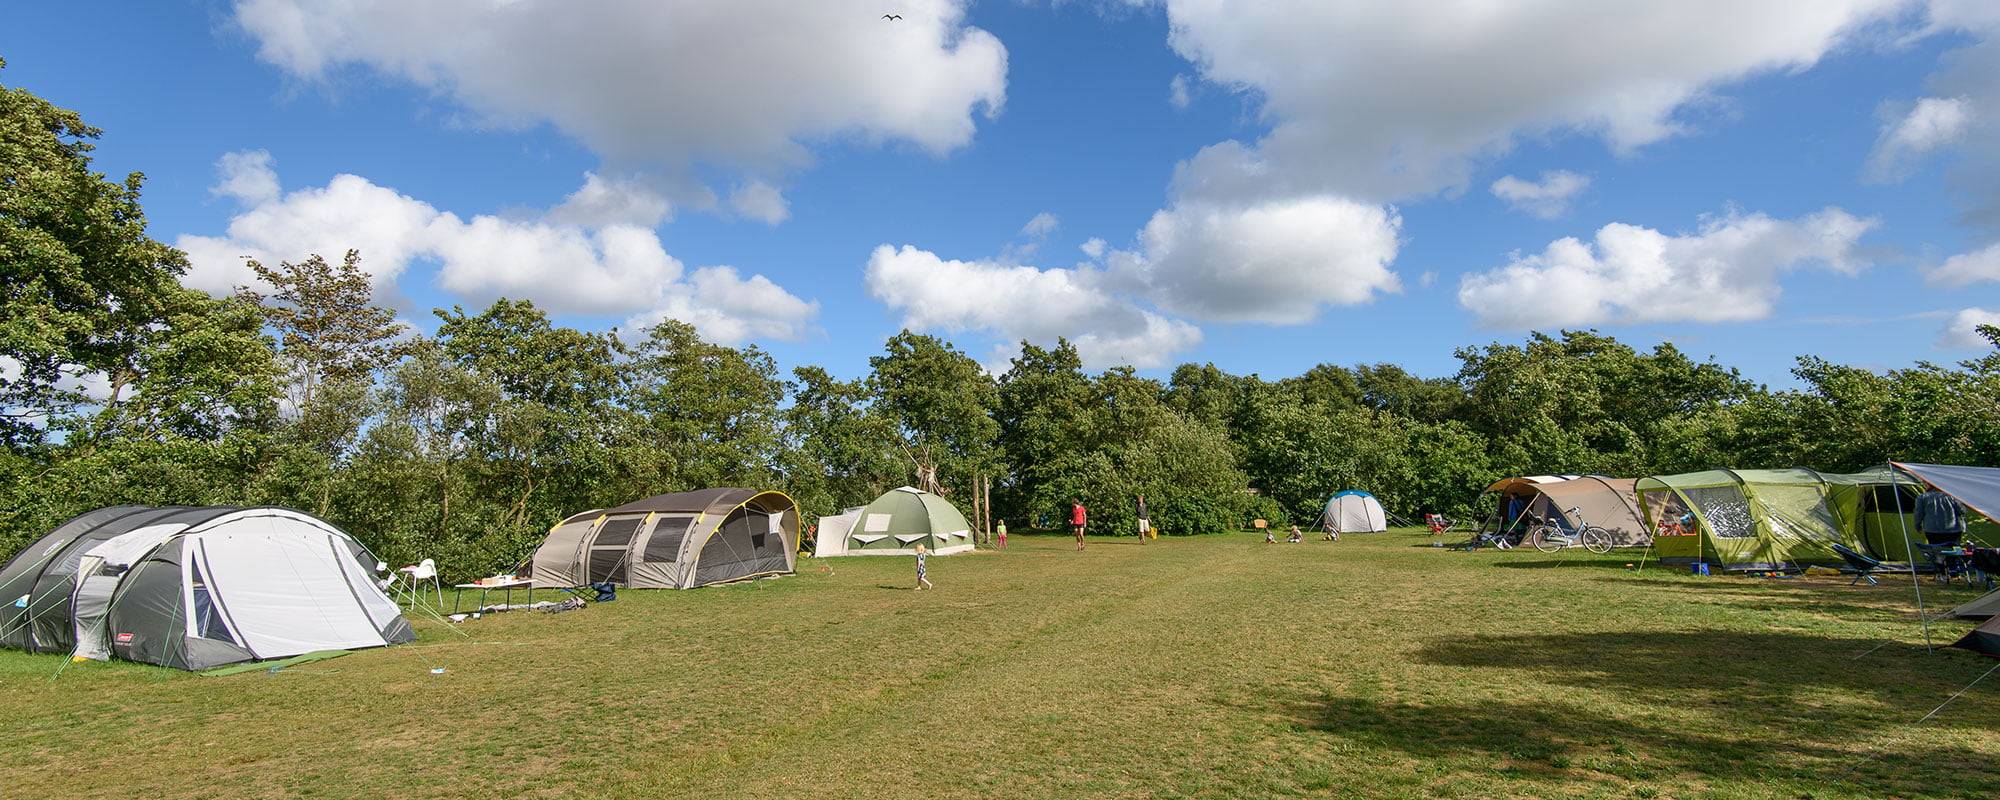 Kampeerterrein met tenten in de zomer.